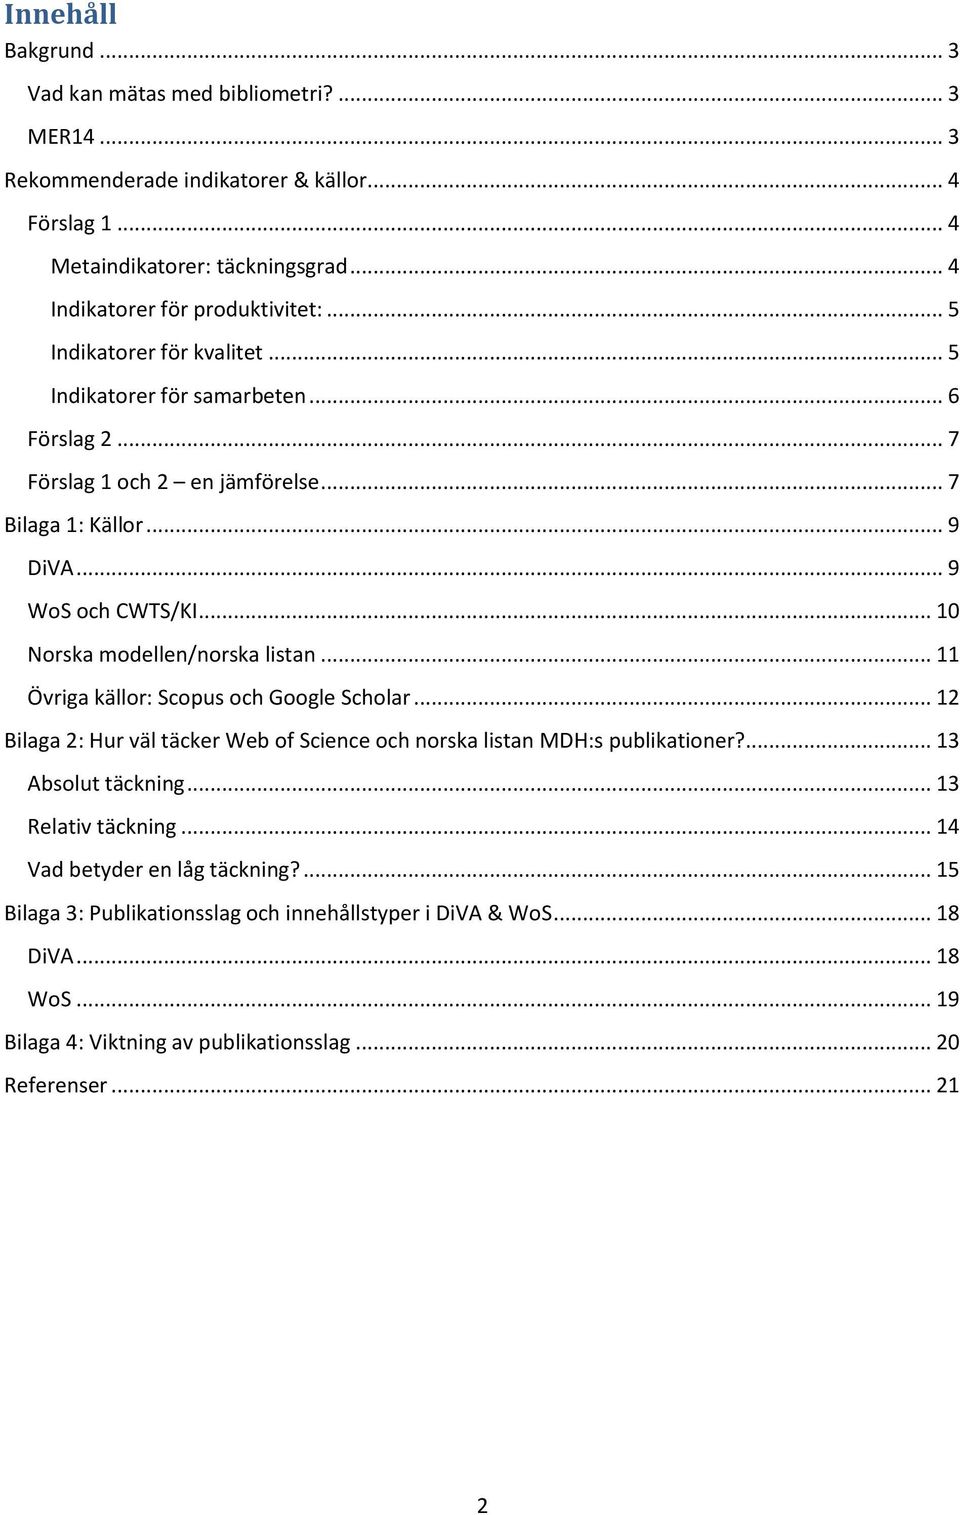 .. 10 Norska modellen/norska listan... 11 Övriga källor: Scopus och Google Scholar... 12 Bilaga 2: Hur väl täcker Web of Science och norska listan MDH:s publikationer?... 13 Absolut täckning.